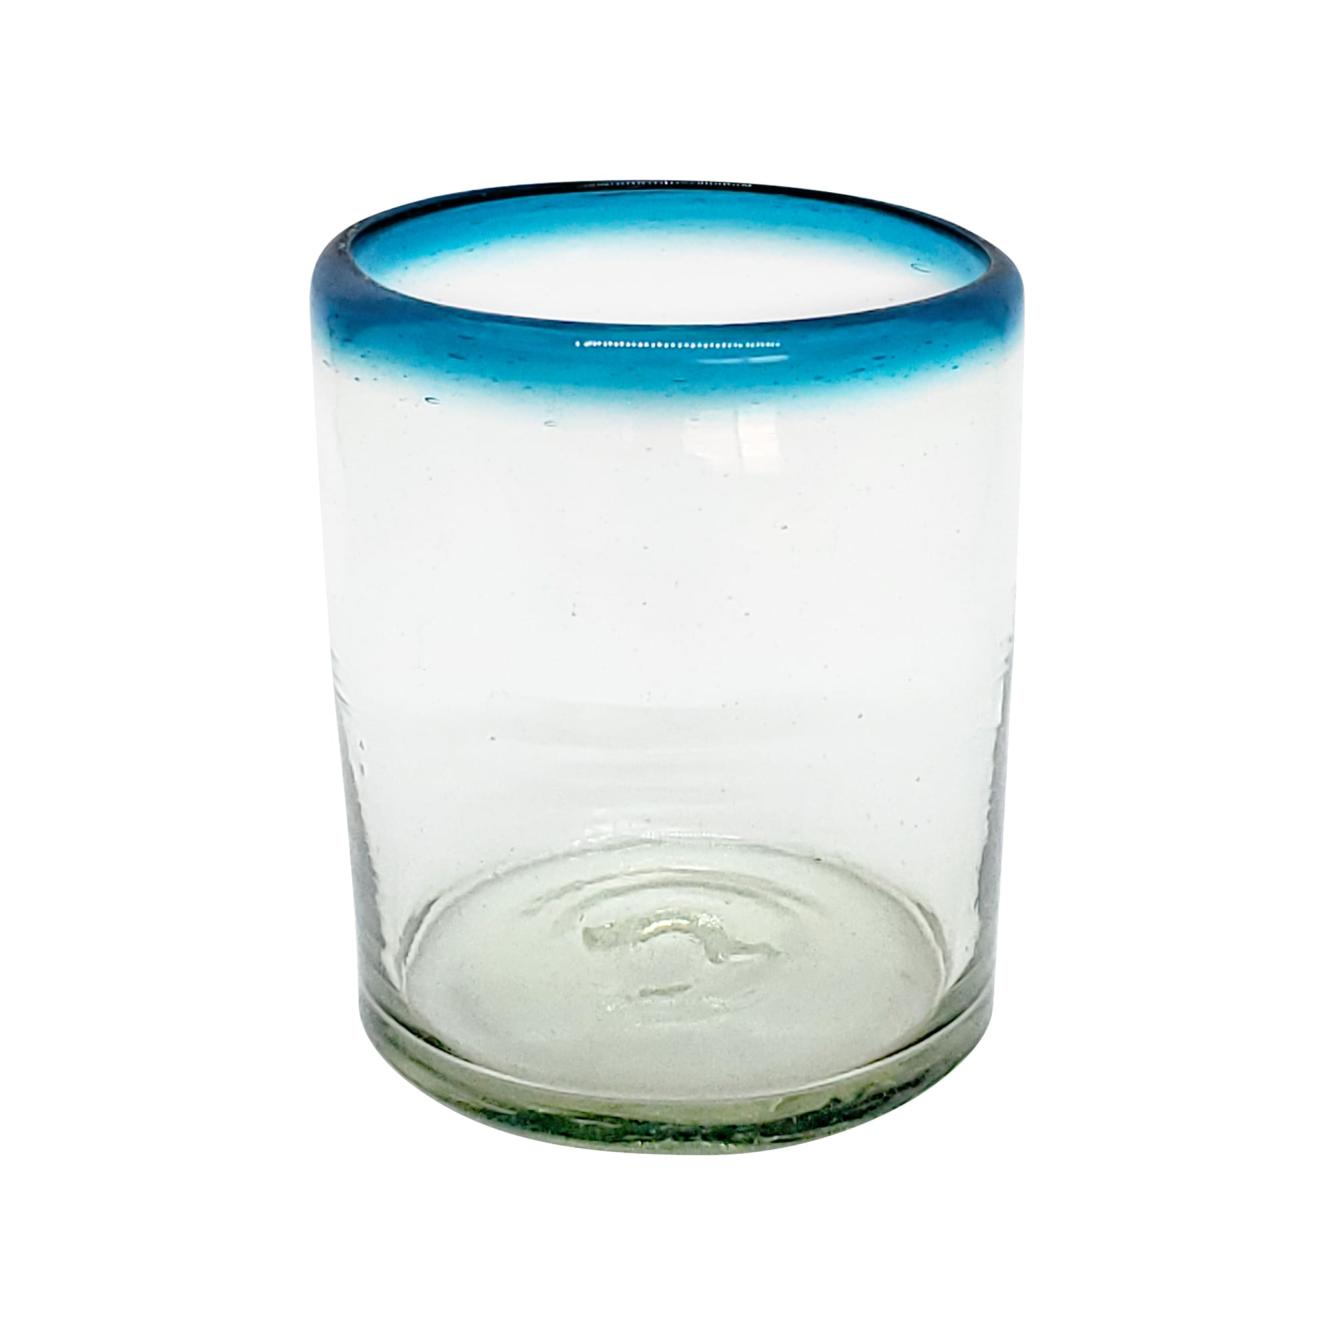 Novedades / Juego de 6 vasos chicos con borde azul aqua / stos vasos chicos son un gran complemento para su juego de jarra y vasos grandes.